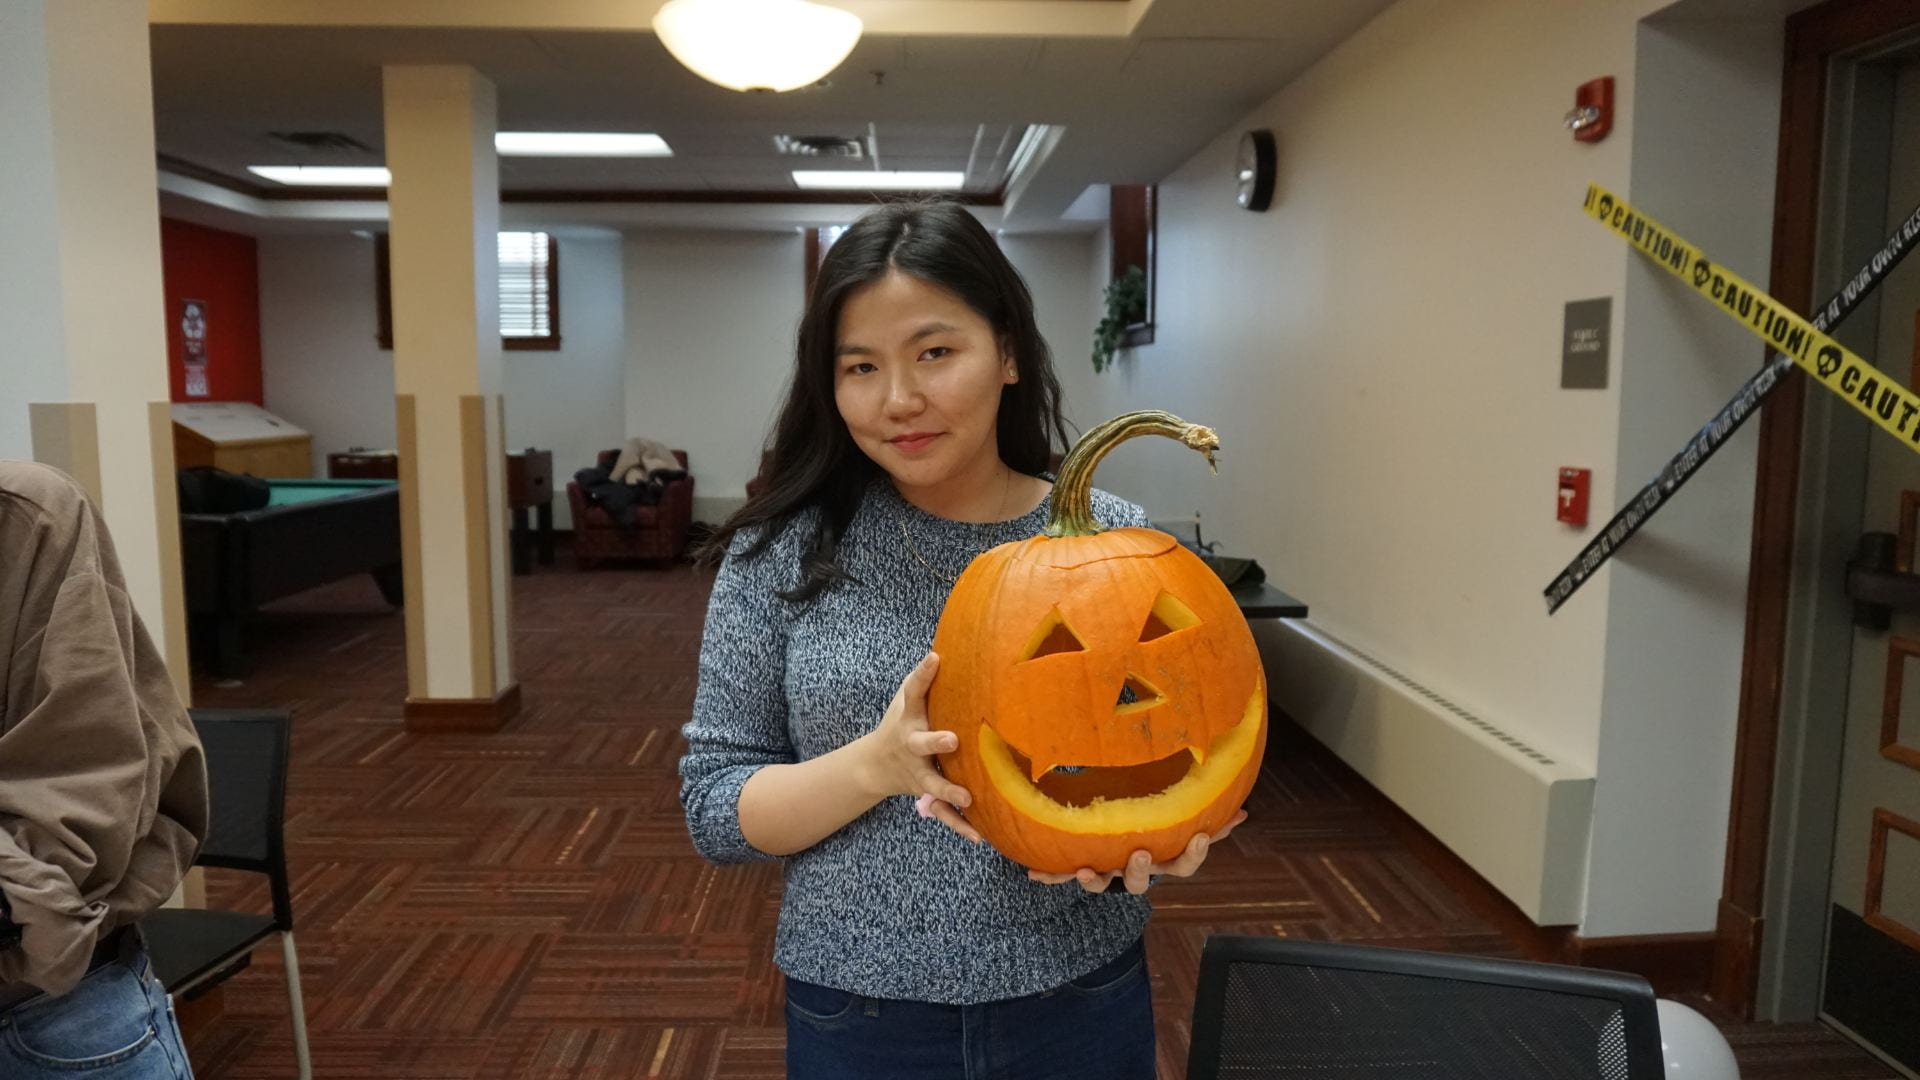 Dana's pumpkin